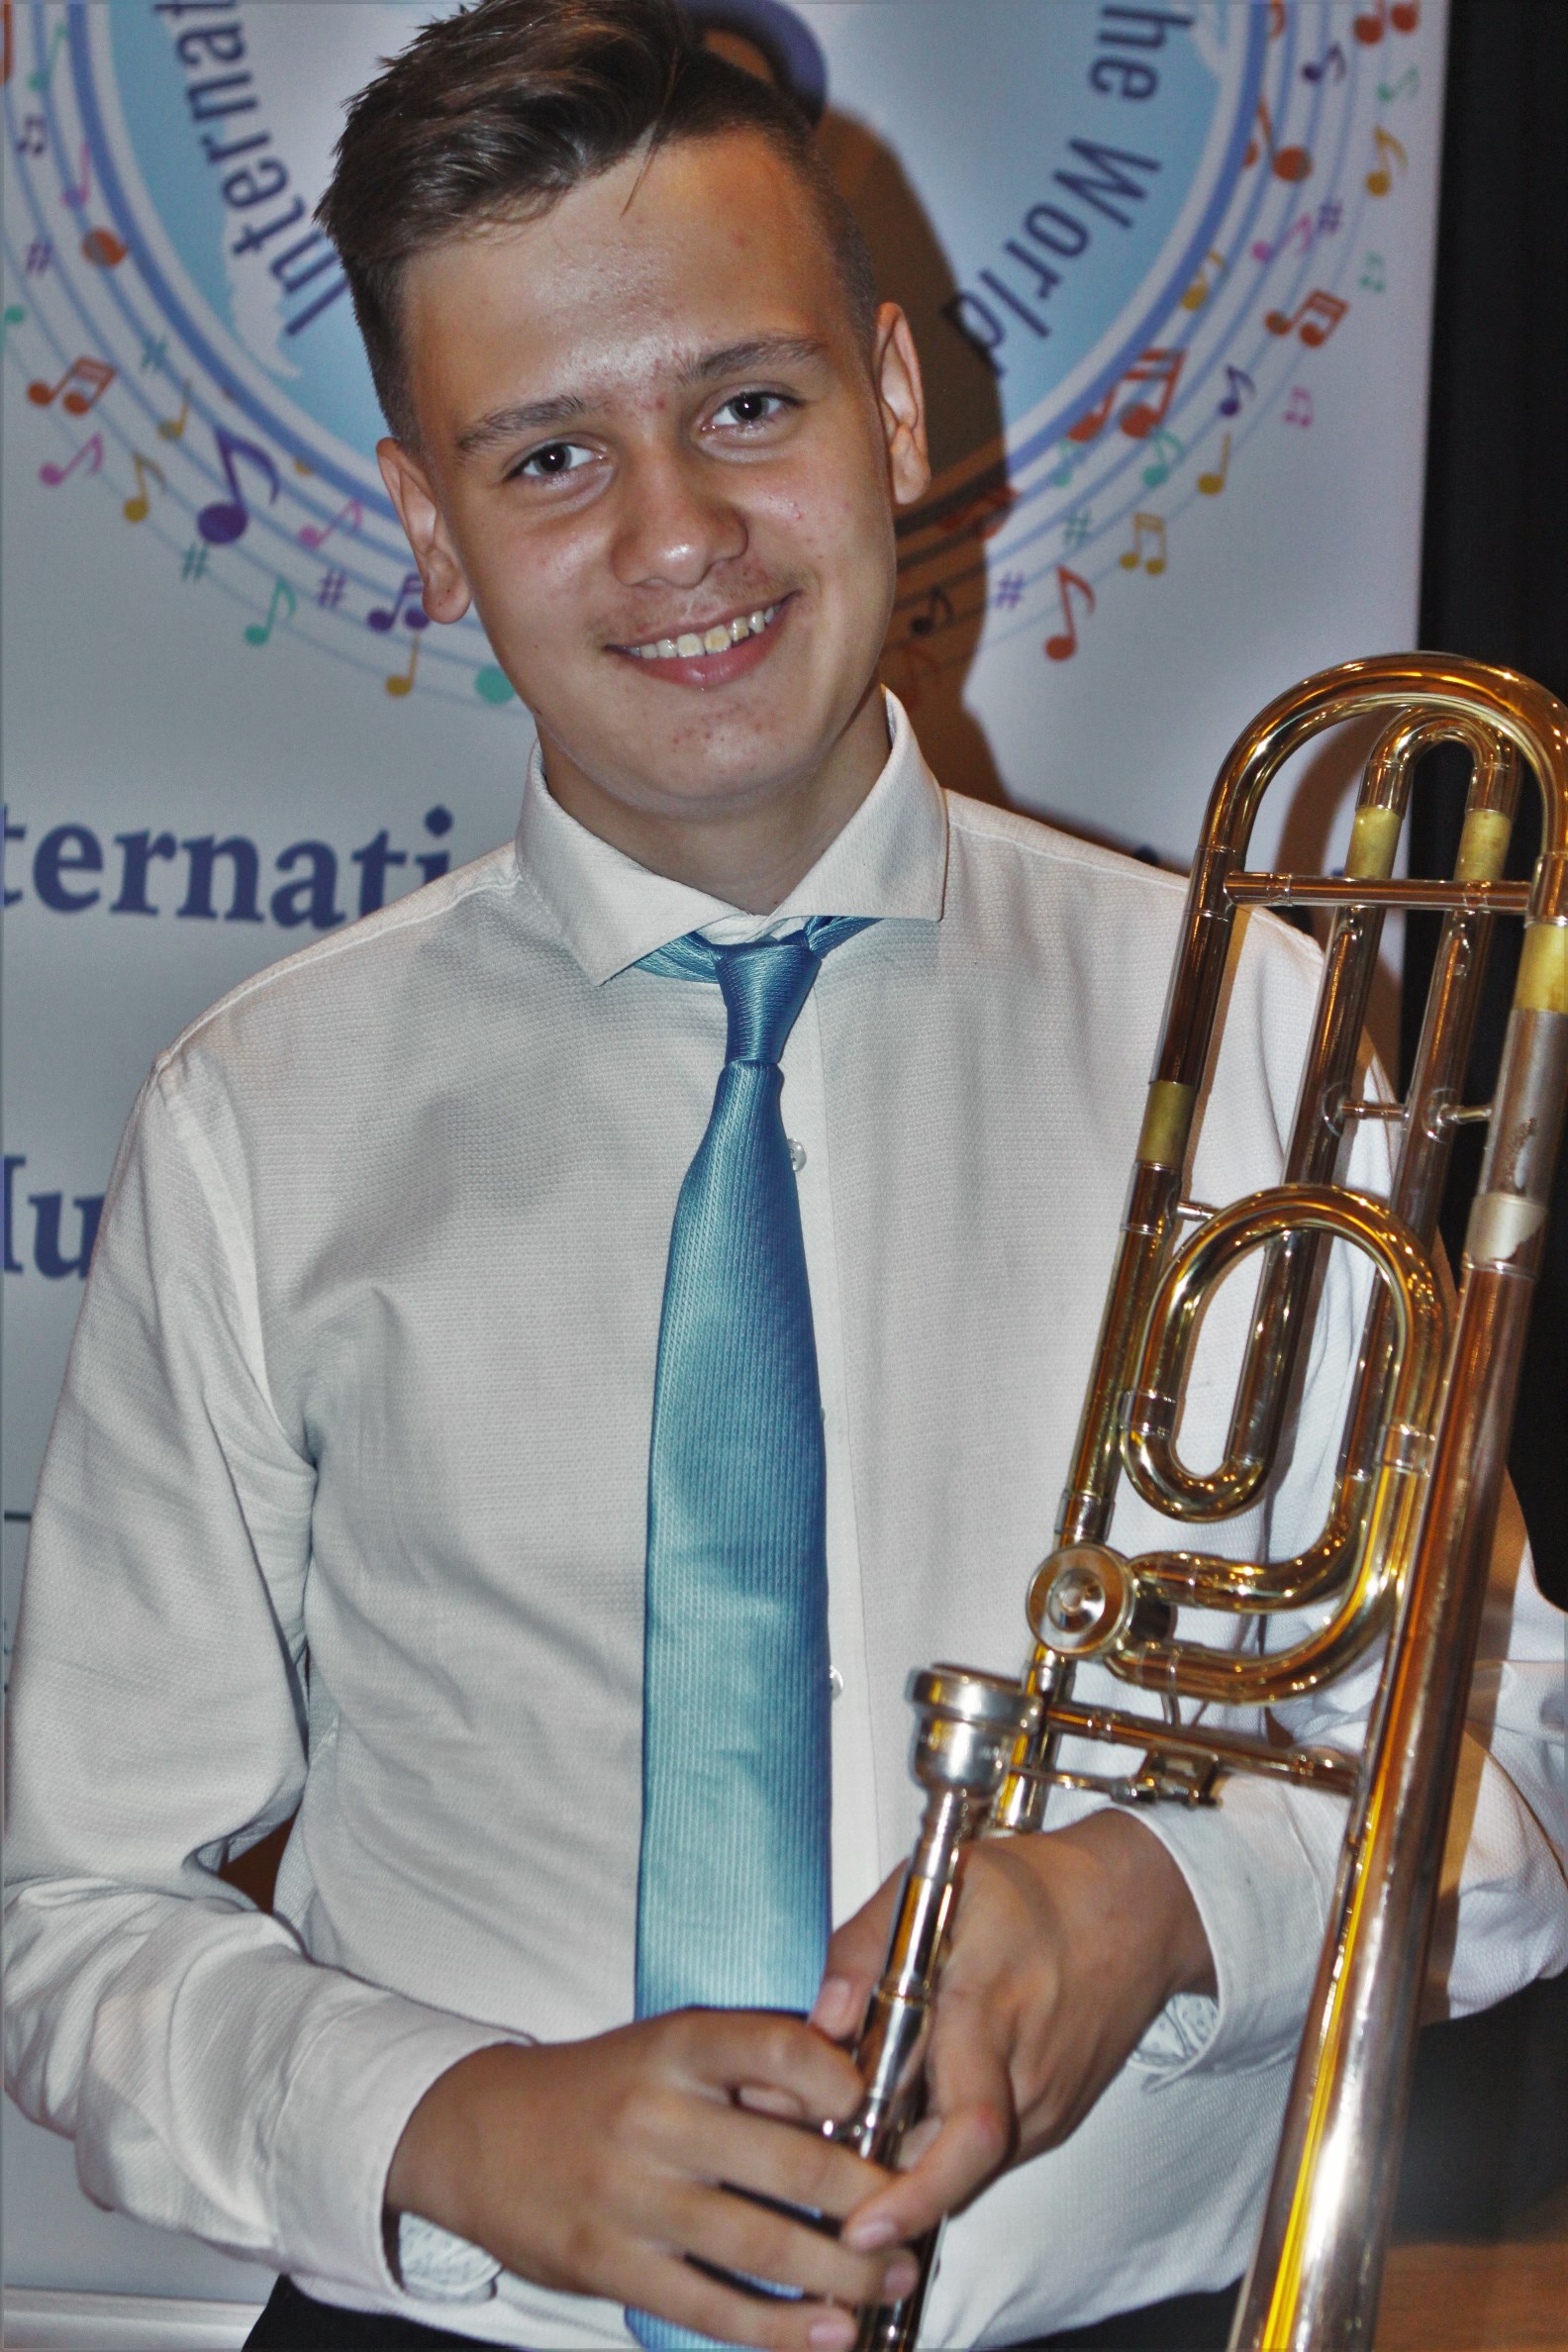 תלמידי מרכז המוסיקה העירוני זכו במקום הראשון בתחרות מוסיקה בינלאומית לנגנים צעירים